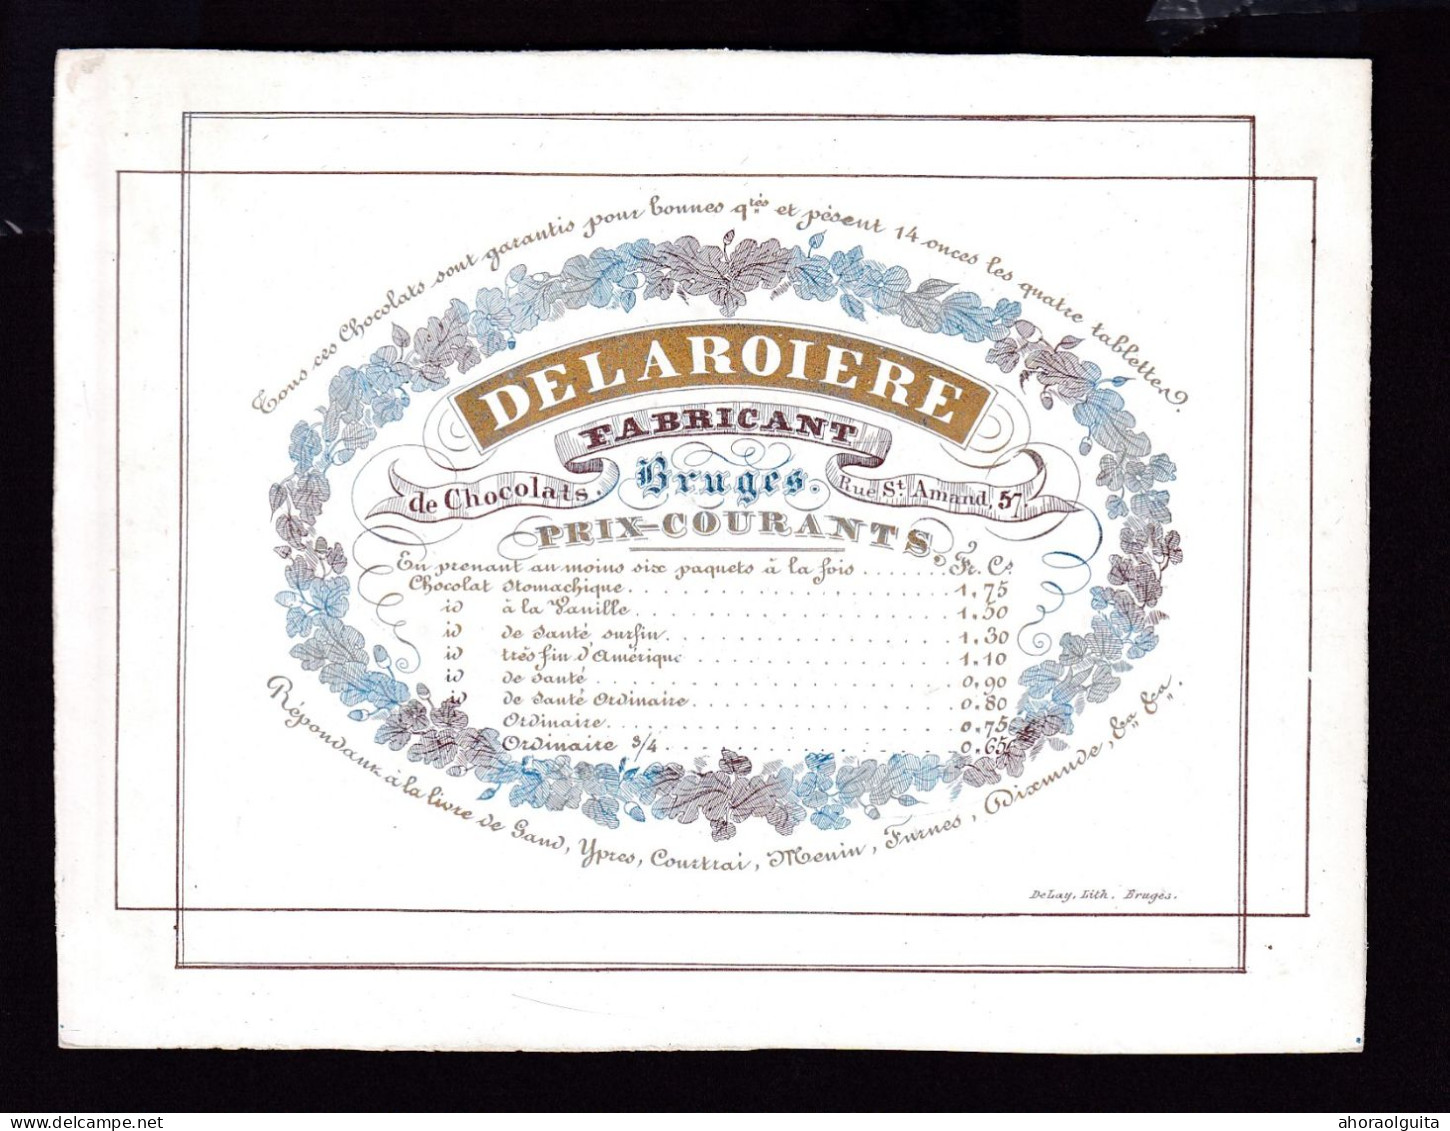 584/29 -- BRUGES CARTE PORCELAINE - Carte Illustrée Delaroiere, Fabricant De Chocolat  - Litho Années1840/50 - Cartes De Visite